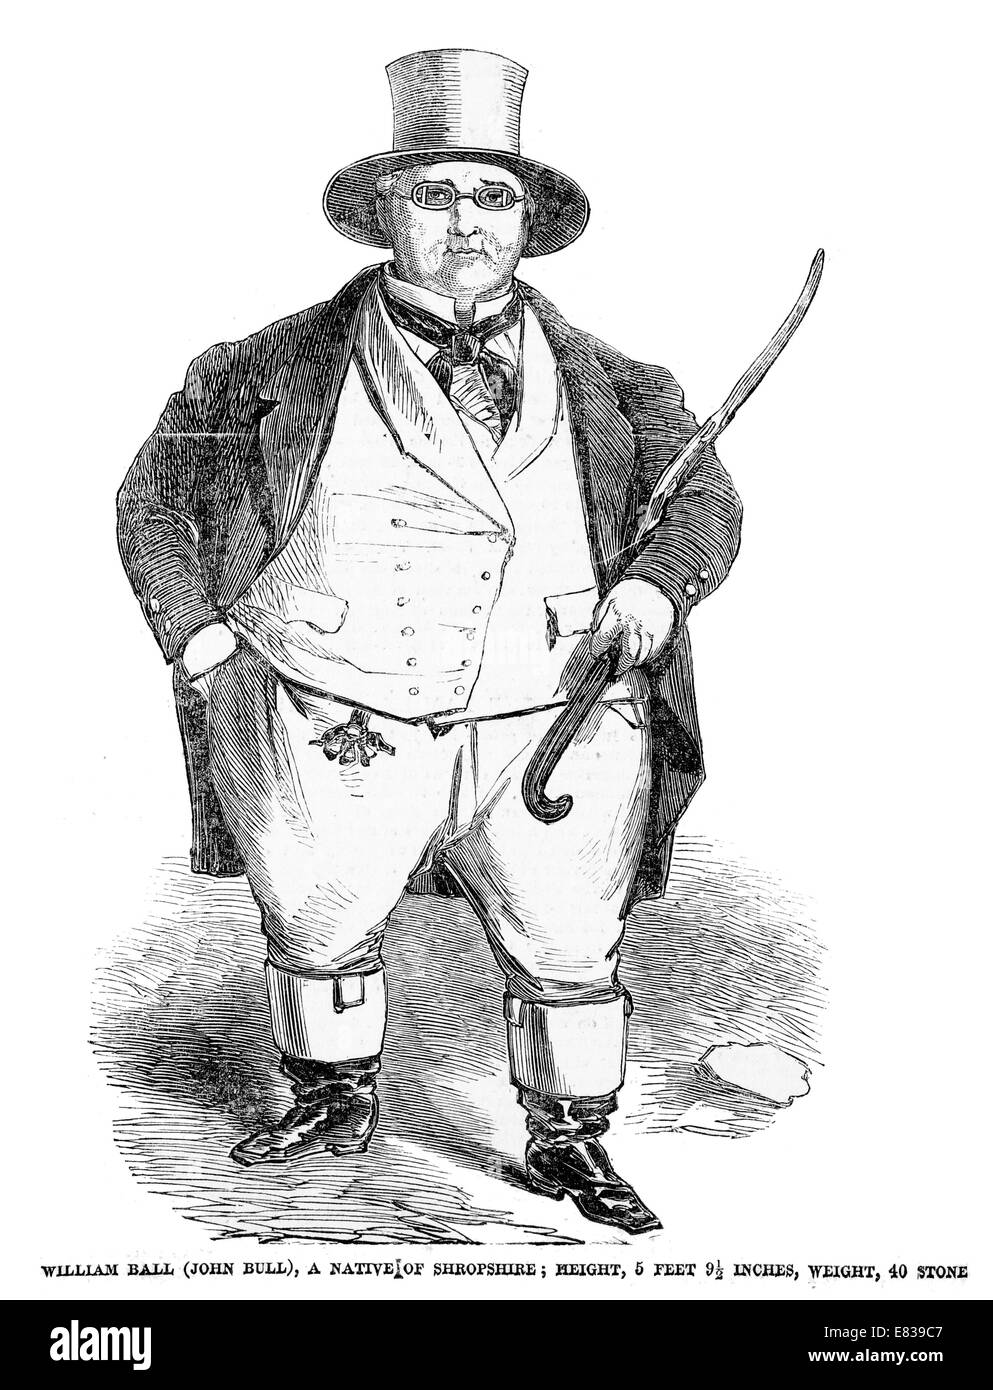 William Ball ( John Bull ) Originaire de Shropshire 40 homme en pierre vers 1853 Banque D'Images